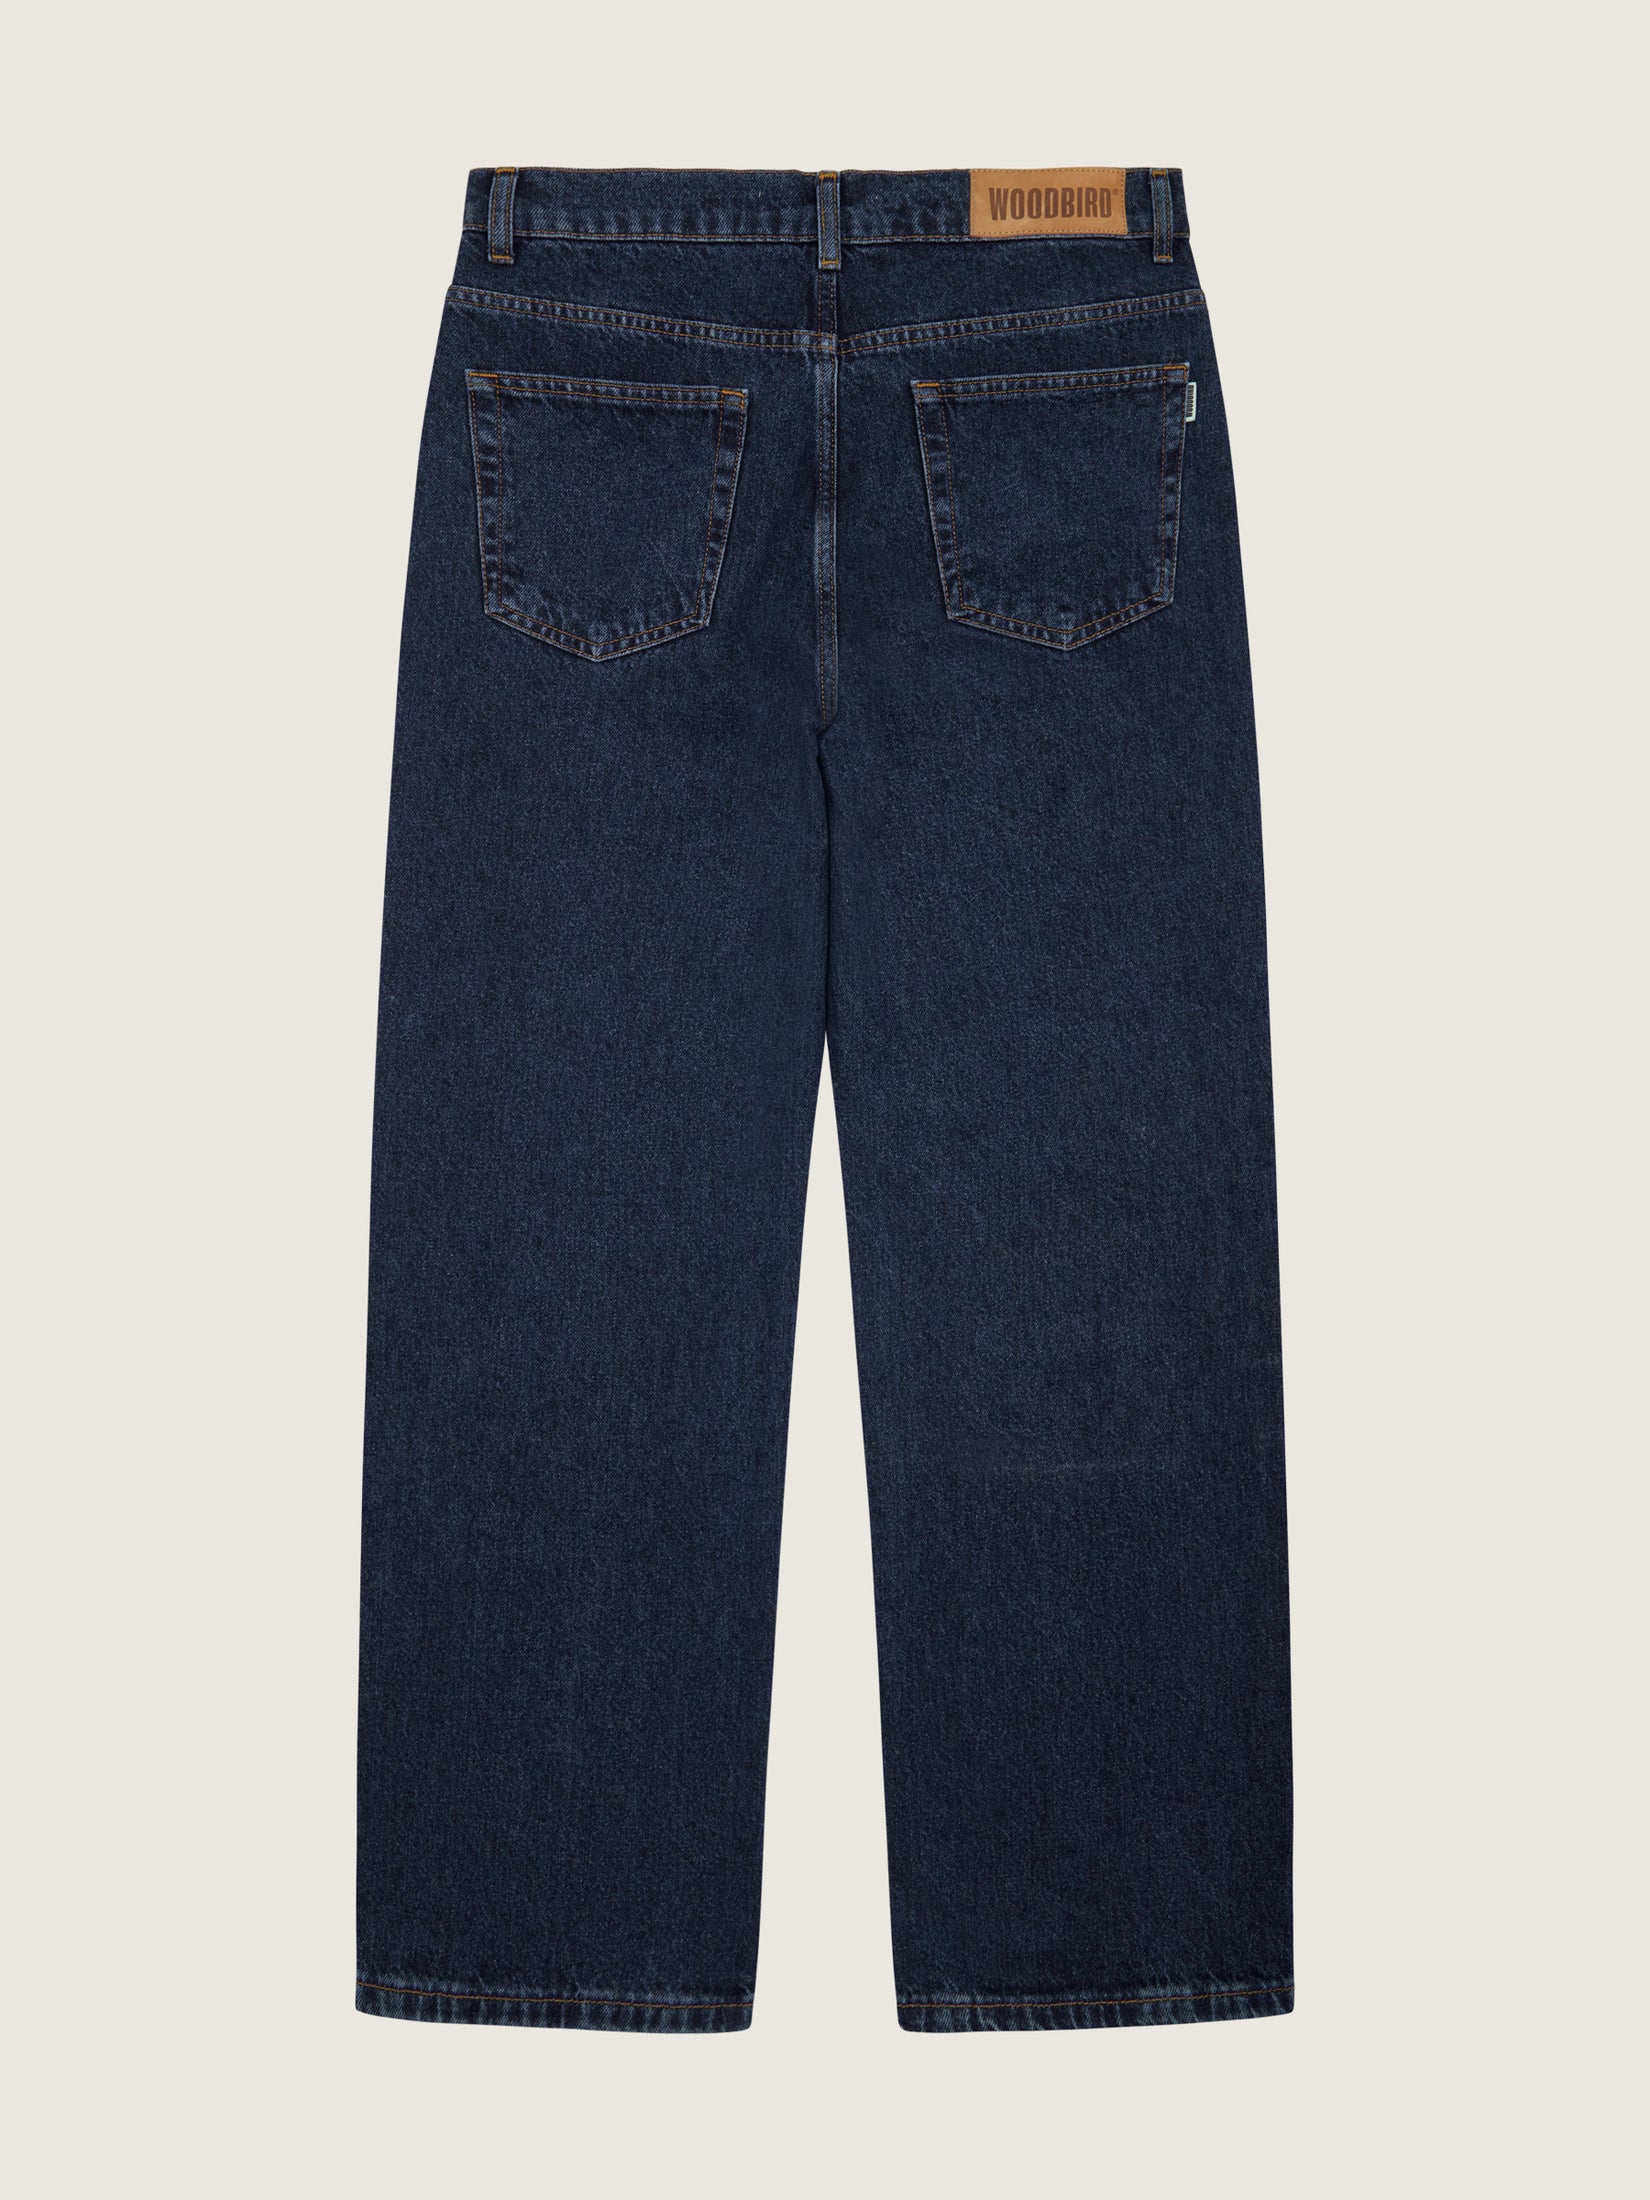 Woodbird WBLeroy Deep90s Jeans Jeans 90s Blue